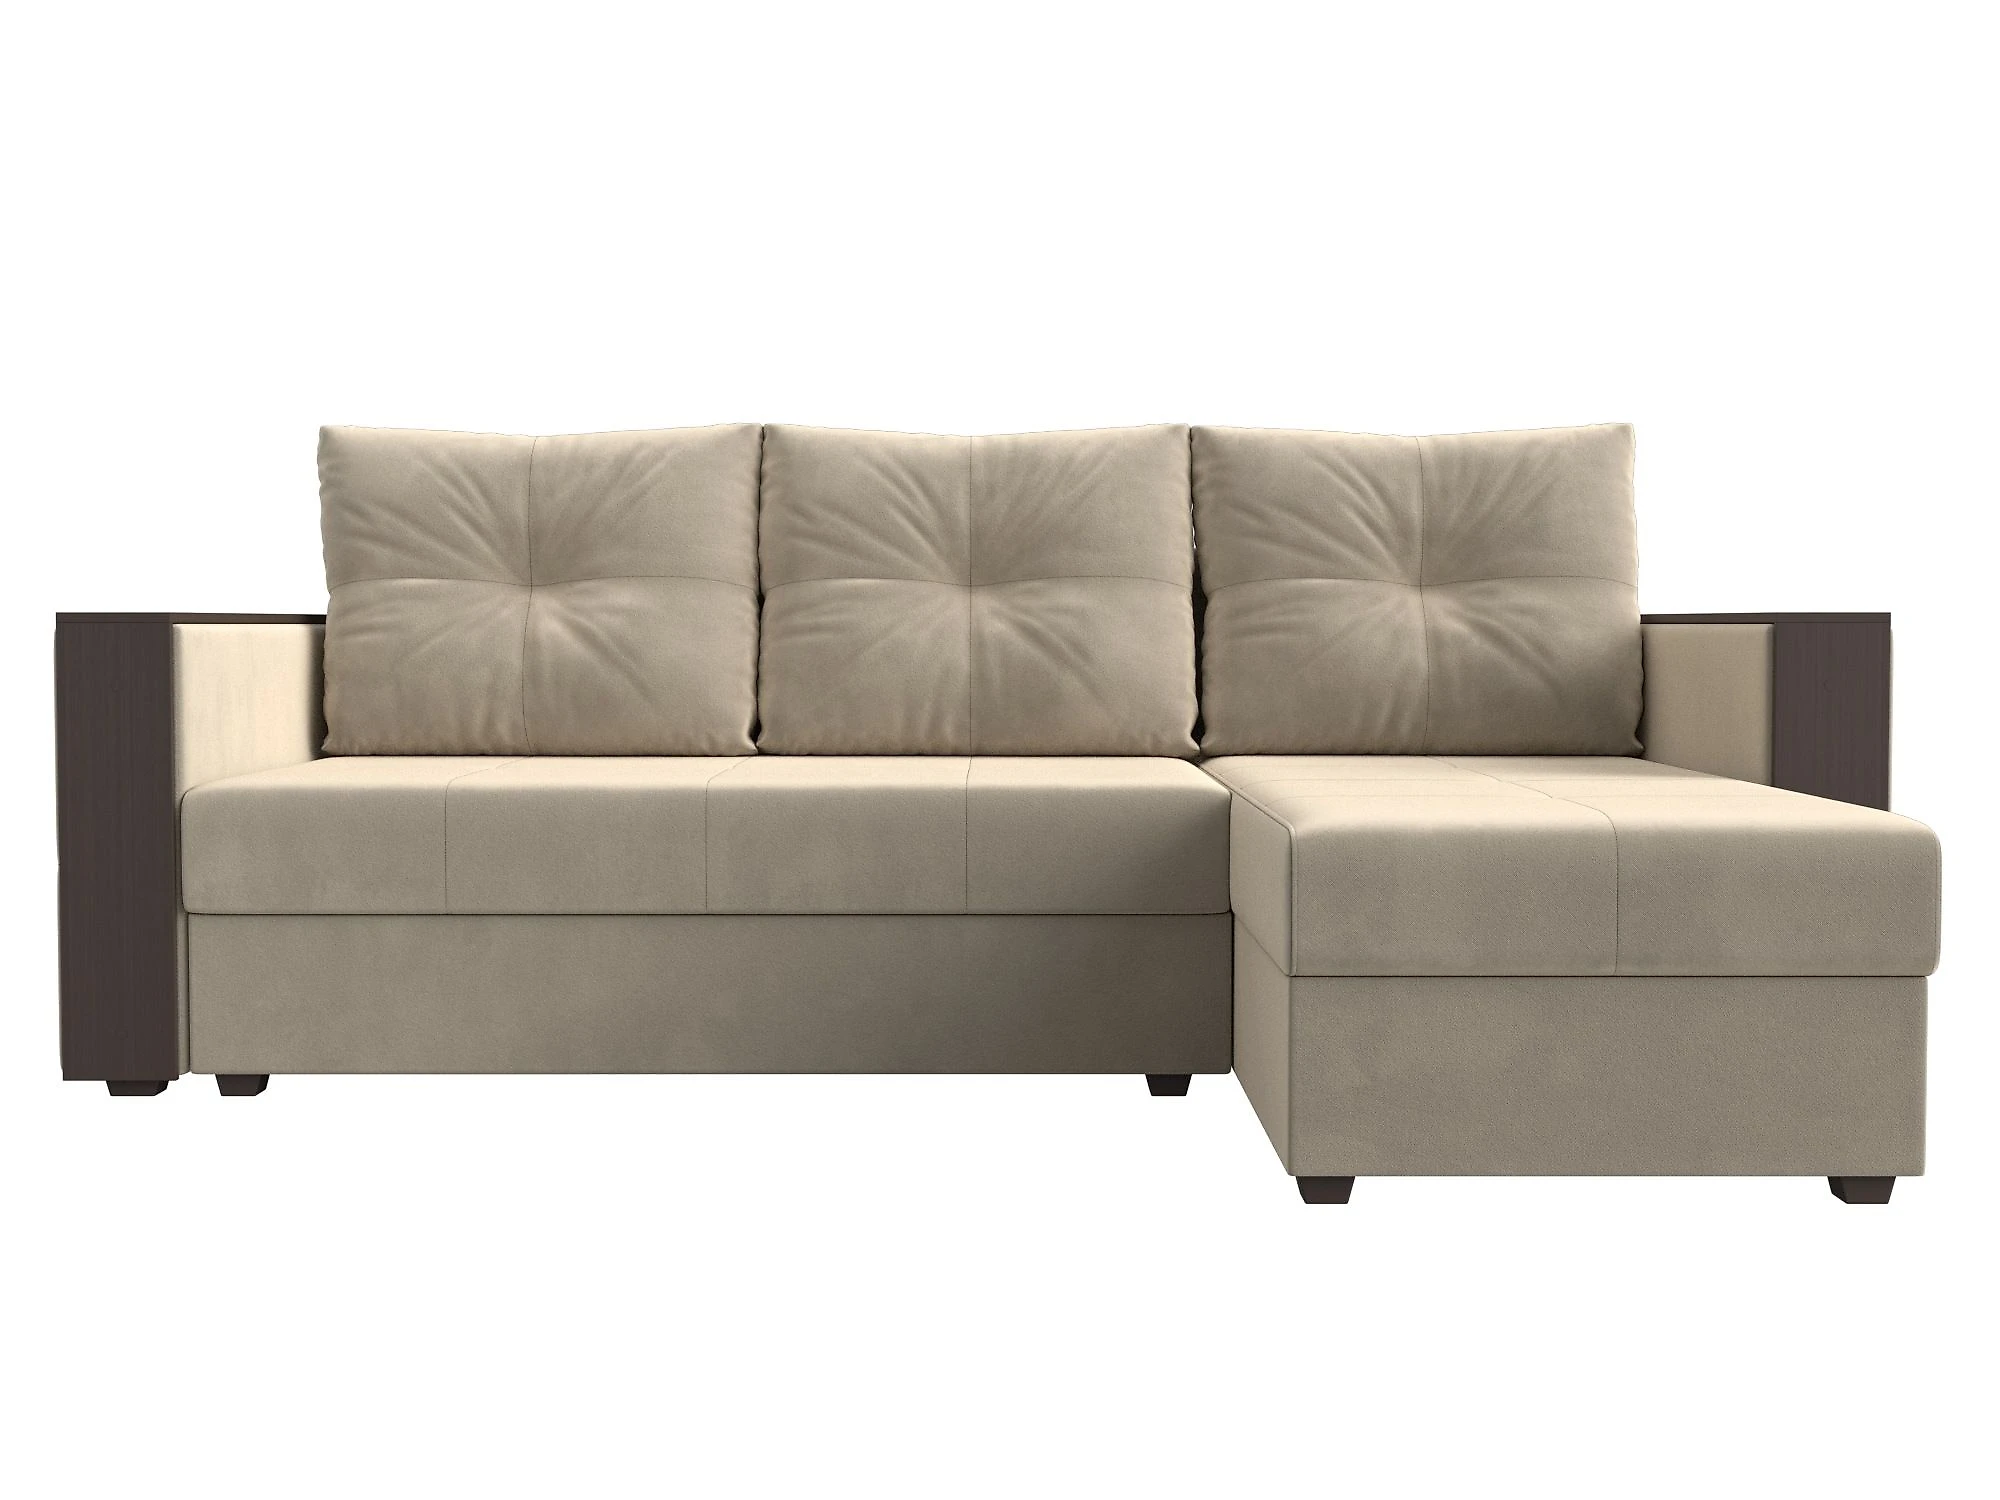 Односпальный угловой диван Валенсия Лайт Дизайн 1